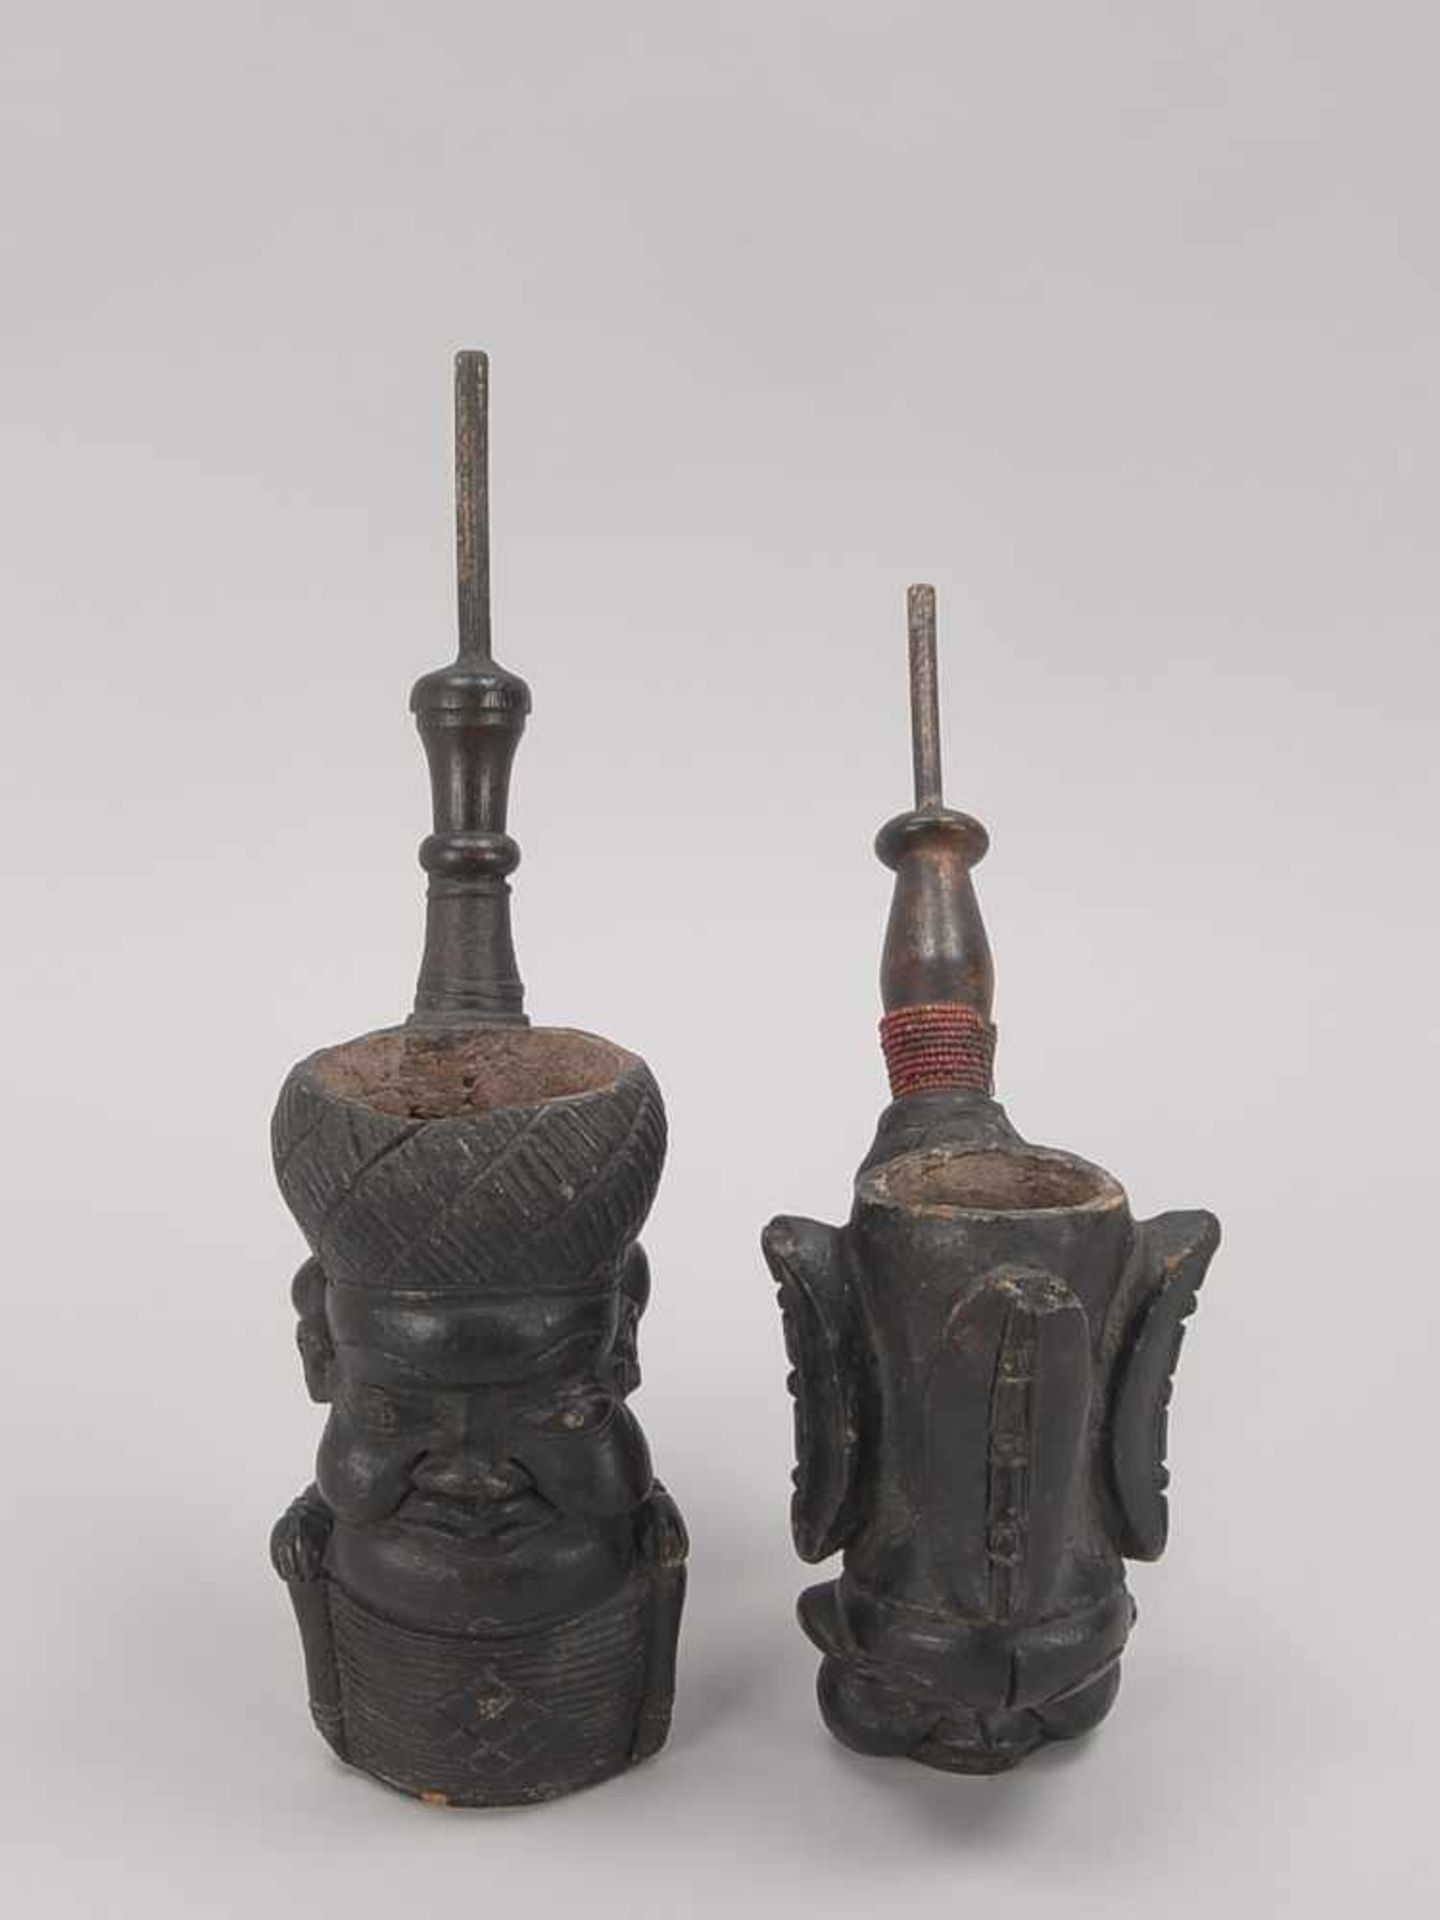 2 große Tonpfeifen/Keramikpfeifen, Schaft und Mundstück aus Holz/geschwärzt, mit figürlichen Köpfen, - Bild 2 aus 2